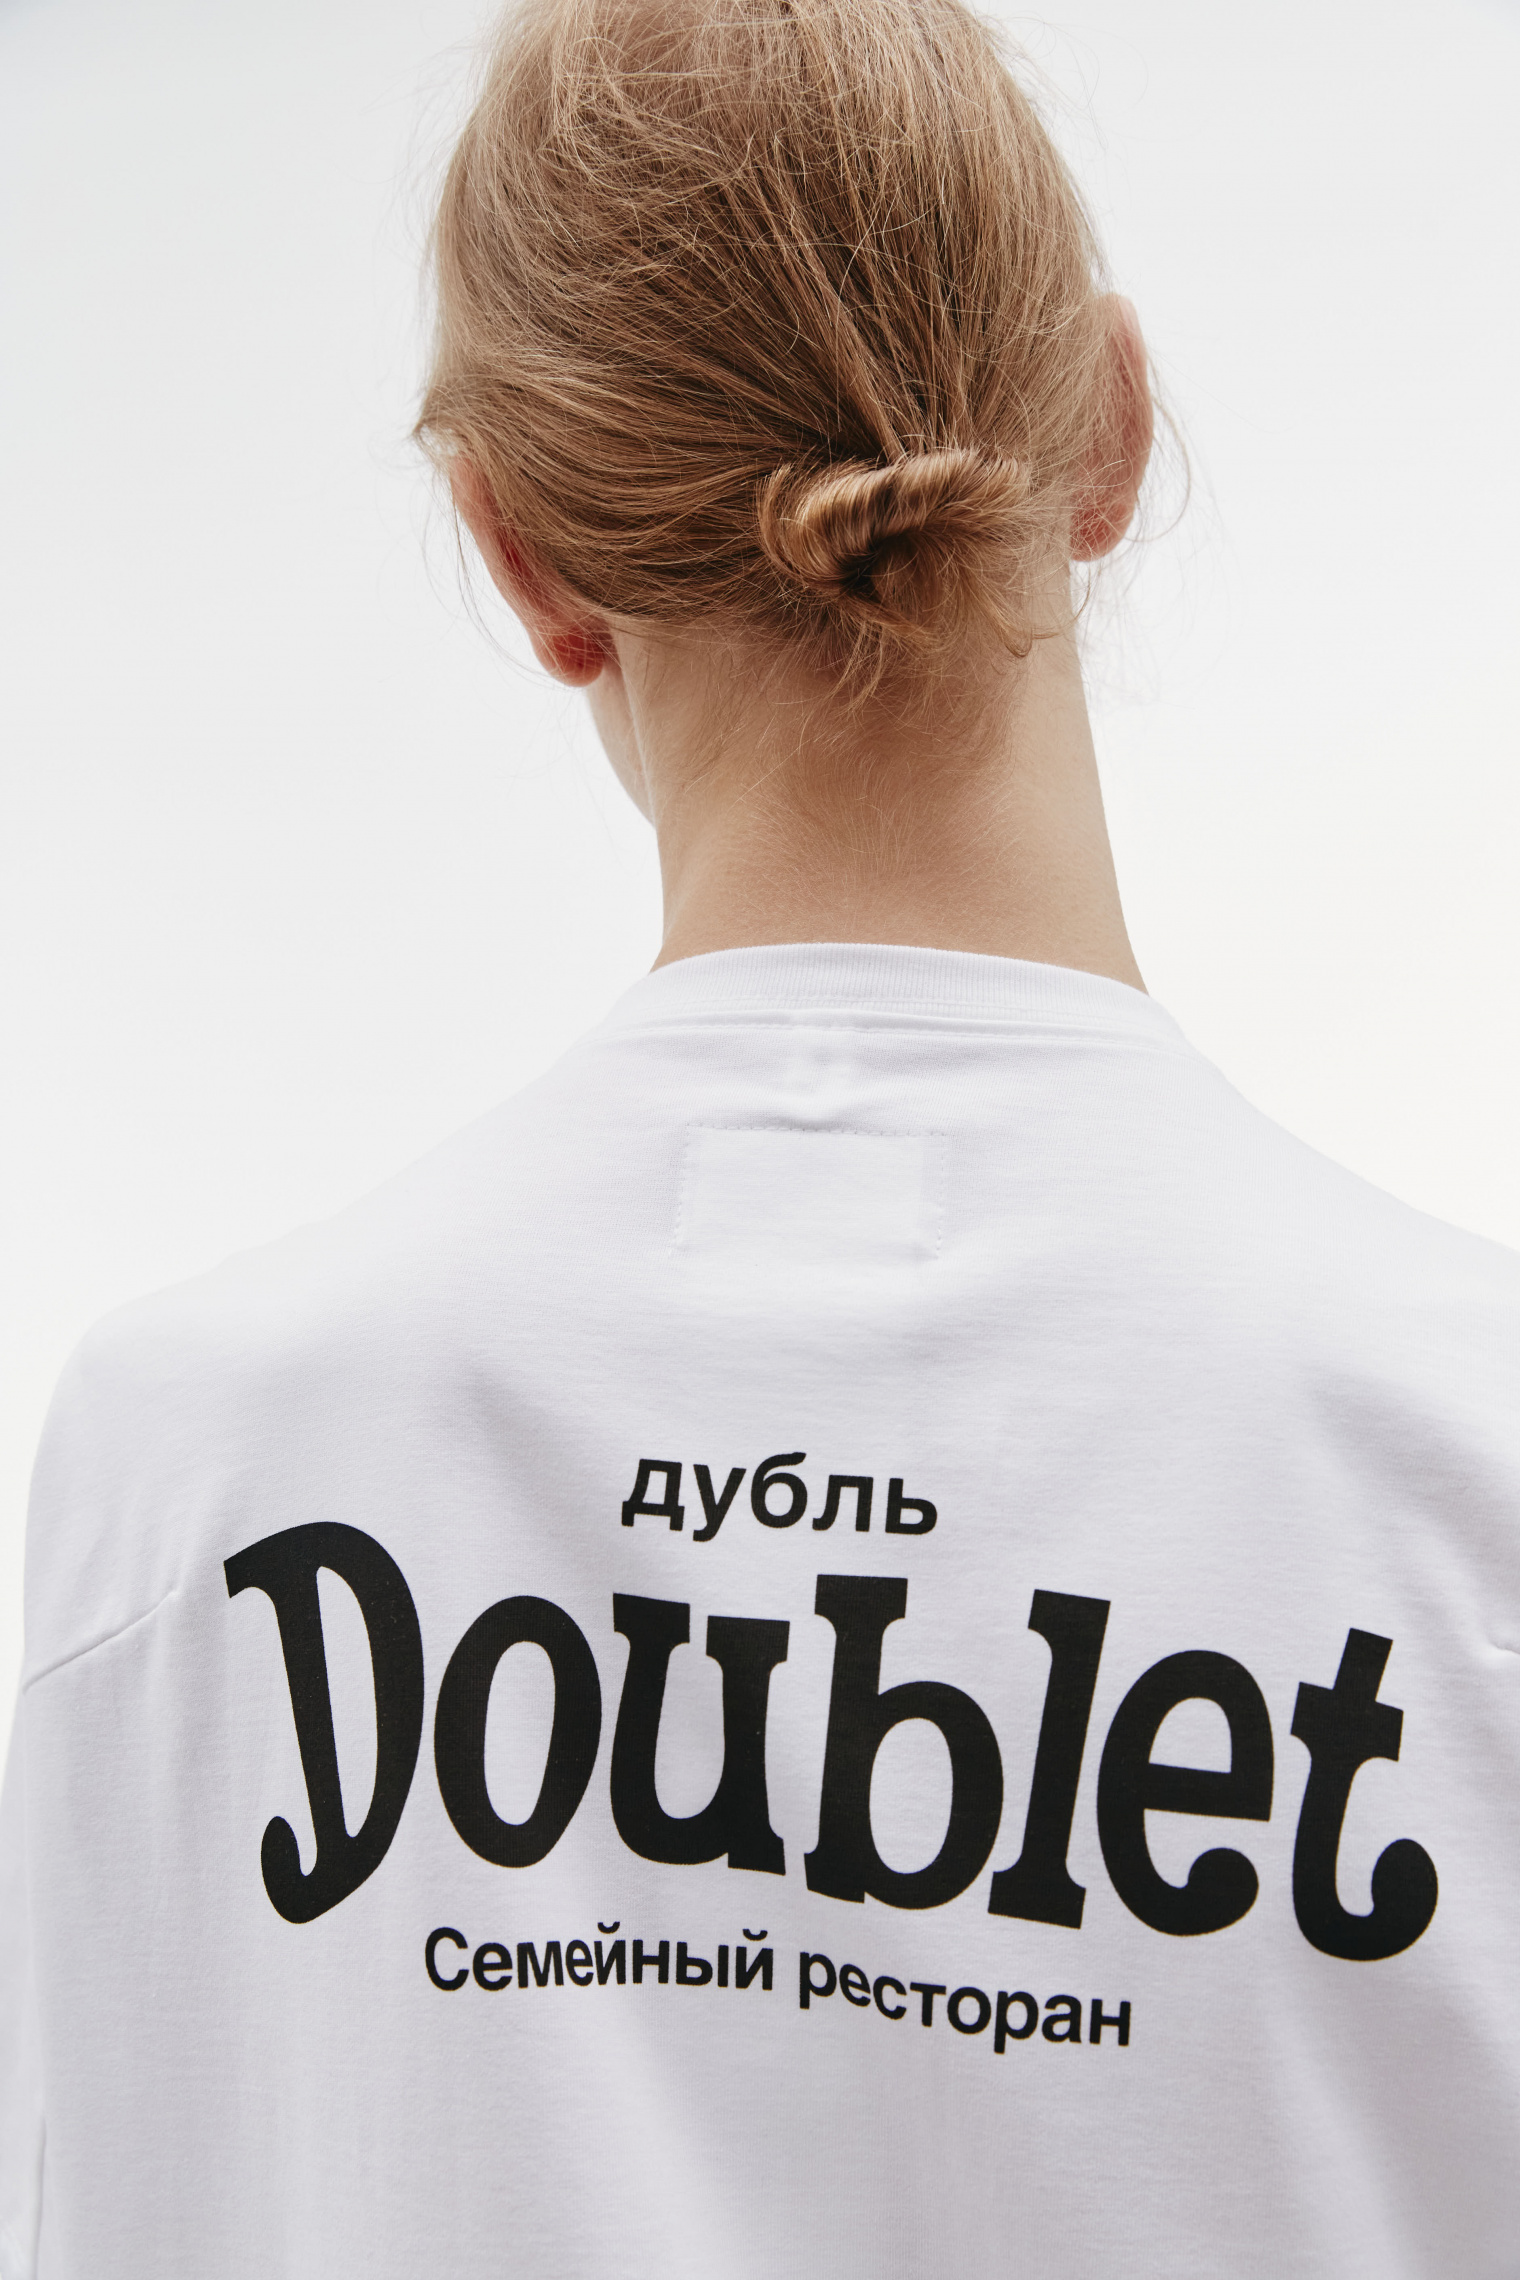 Buy Doublet men white doublet x sv t-shirt for $445 online on SV77 